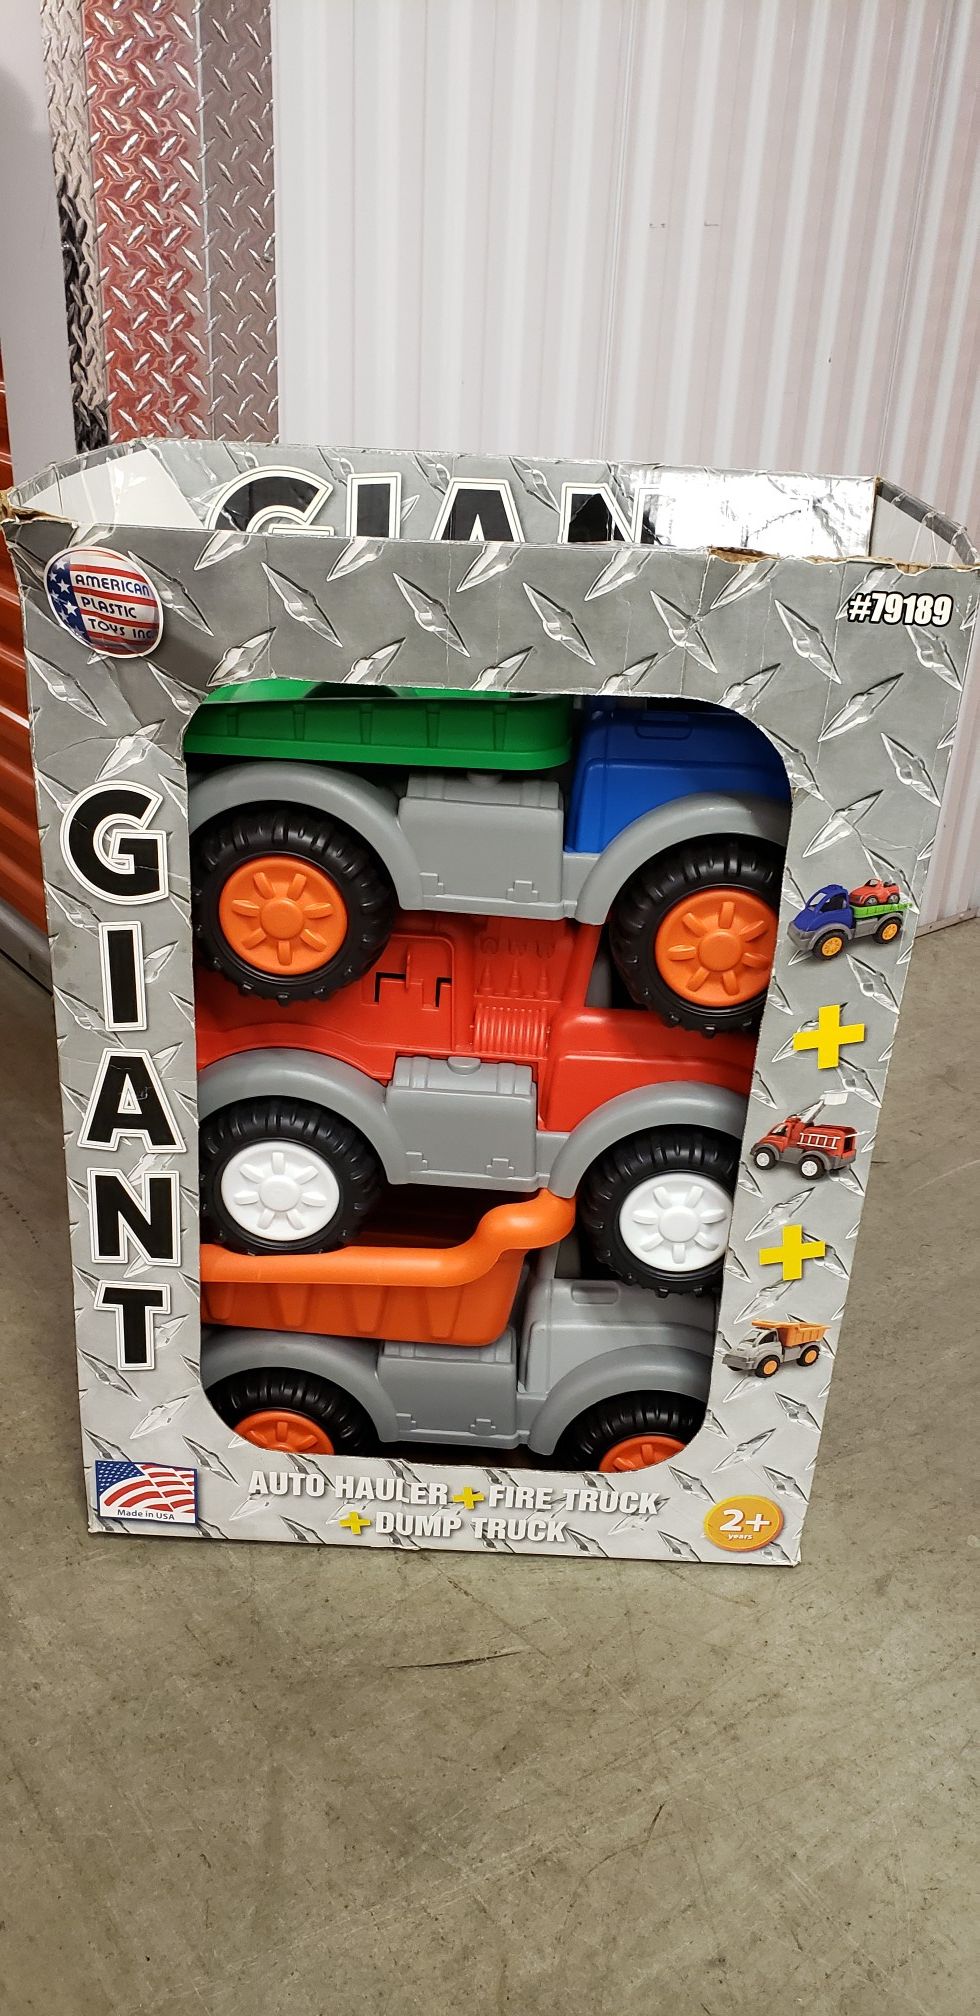 3 Giant Kids Trucks